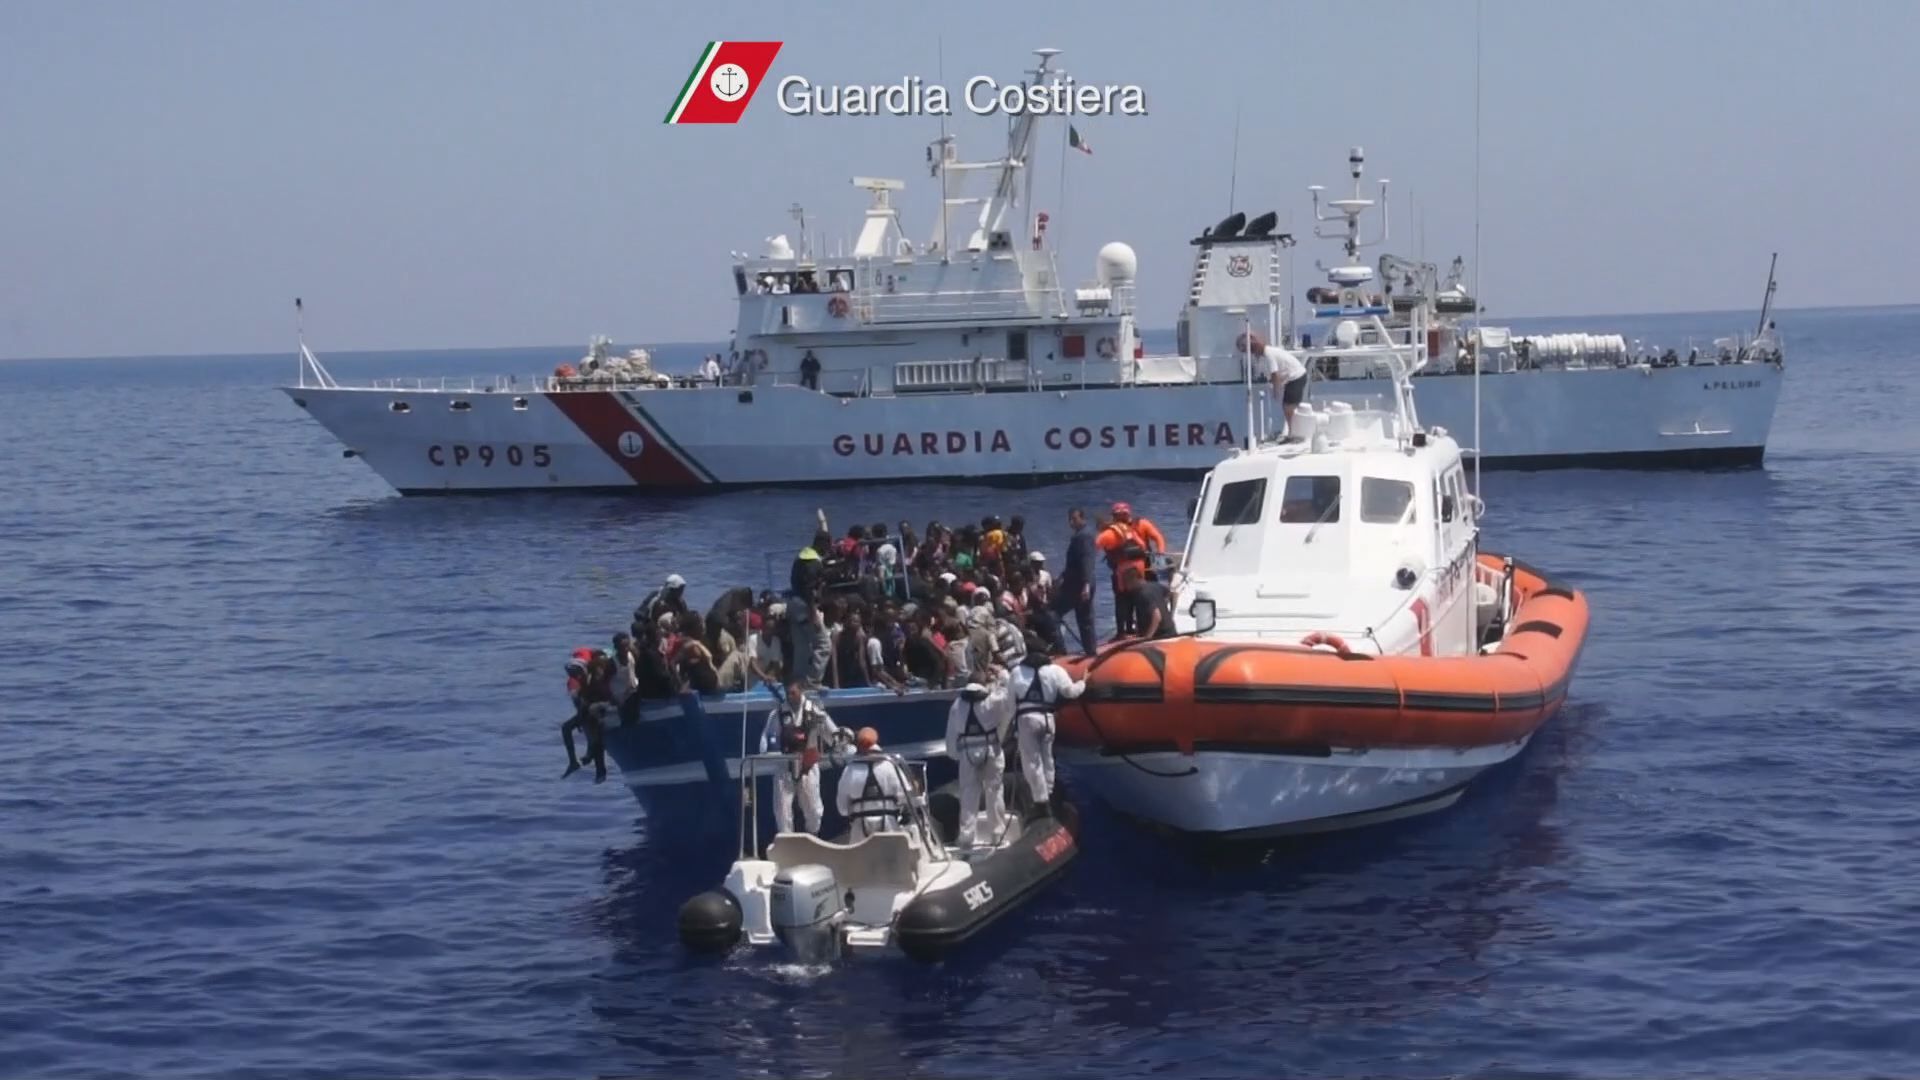 In arrivo una nave con a bordo i migranti soccorsi al.largo del canale di Sicilia